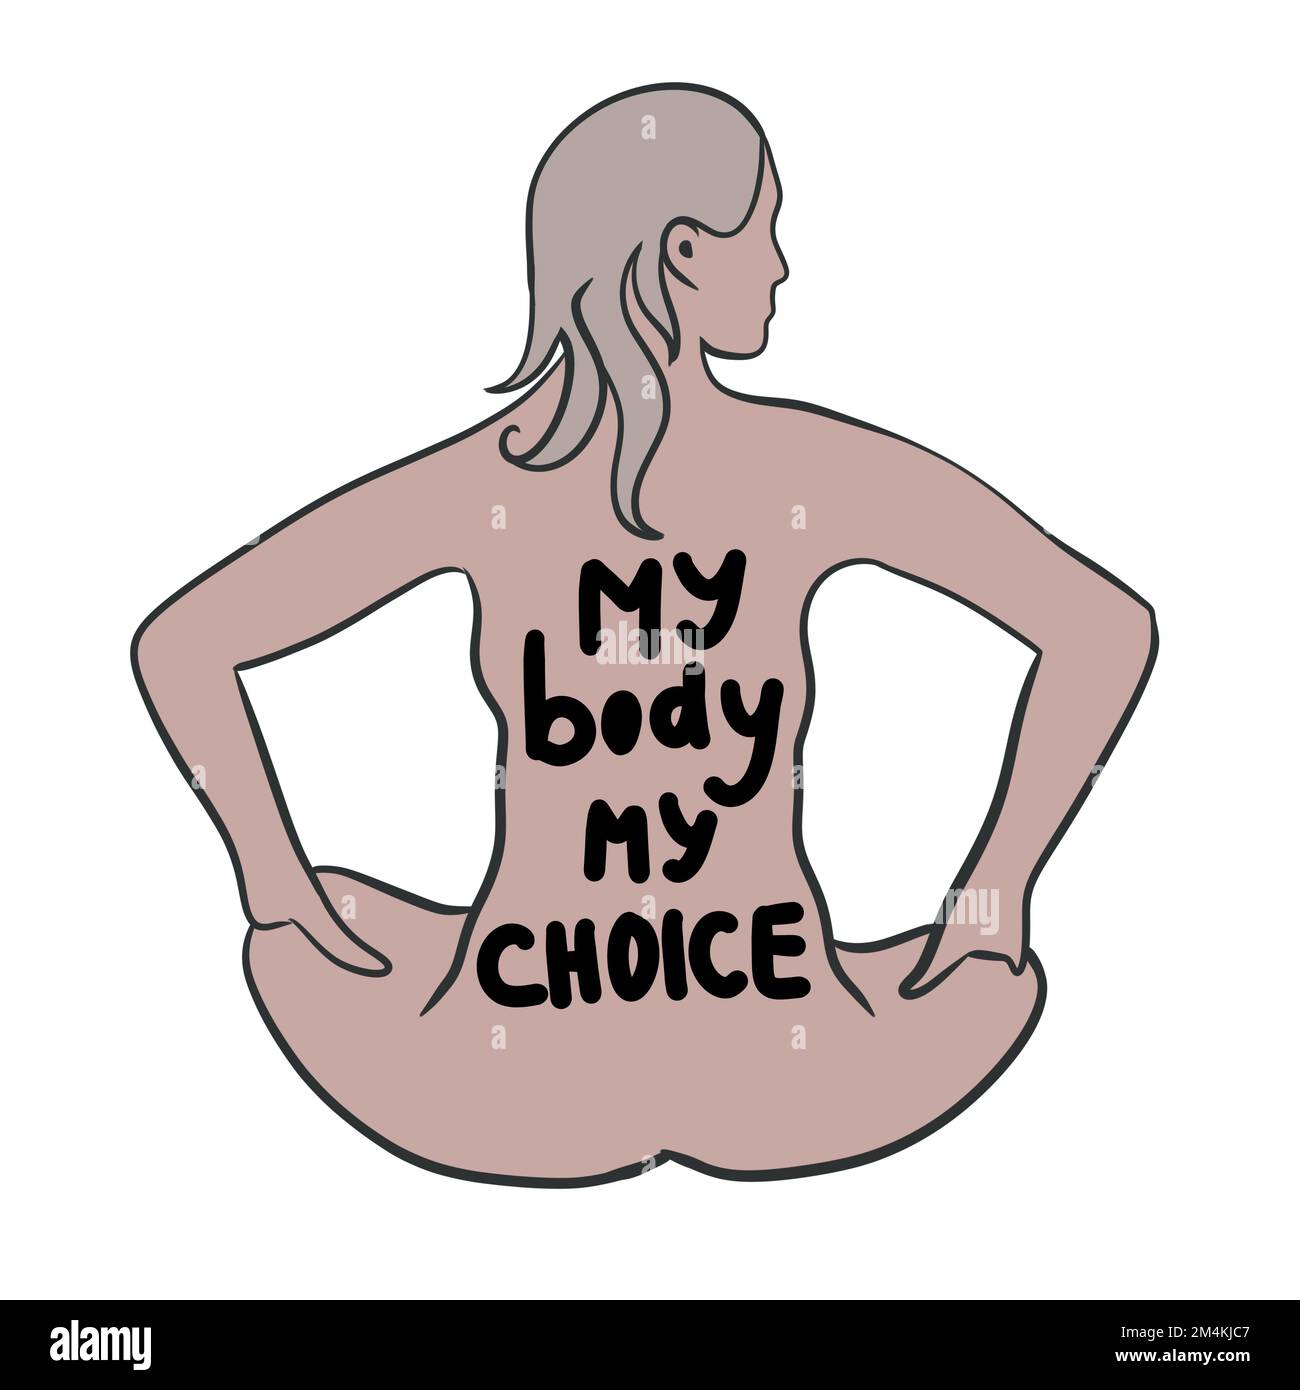 Mi cuerpo mi elección mano dibujado ilustración con el cuerpo de la mujer. Concepto de activismo feminista, derechos reproductivos al aborto, diseño de fila v uada Foto de stock